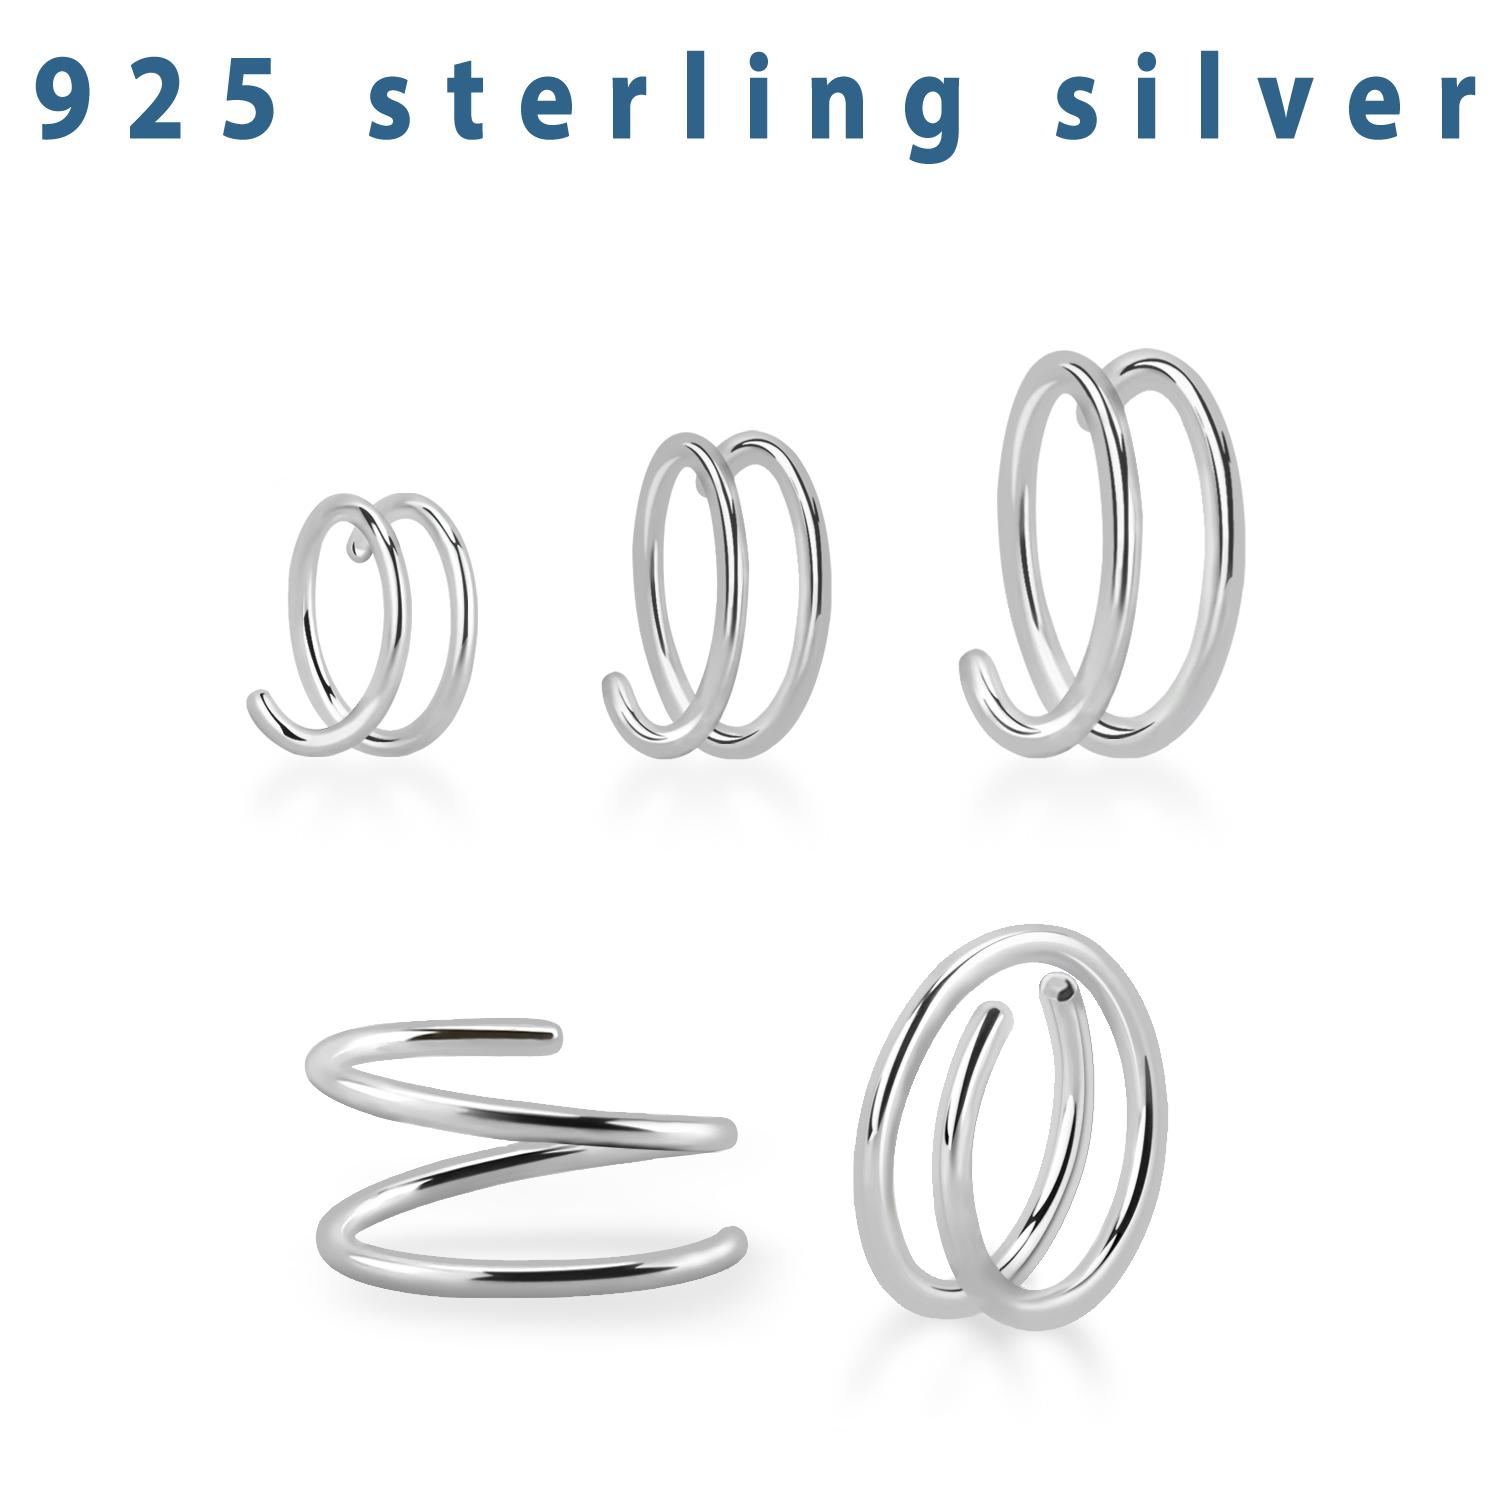 Nässmycke / spiral piercing i 925-silver 0.8mm